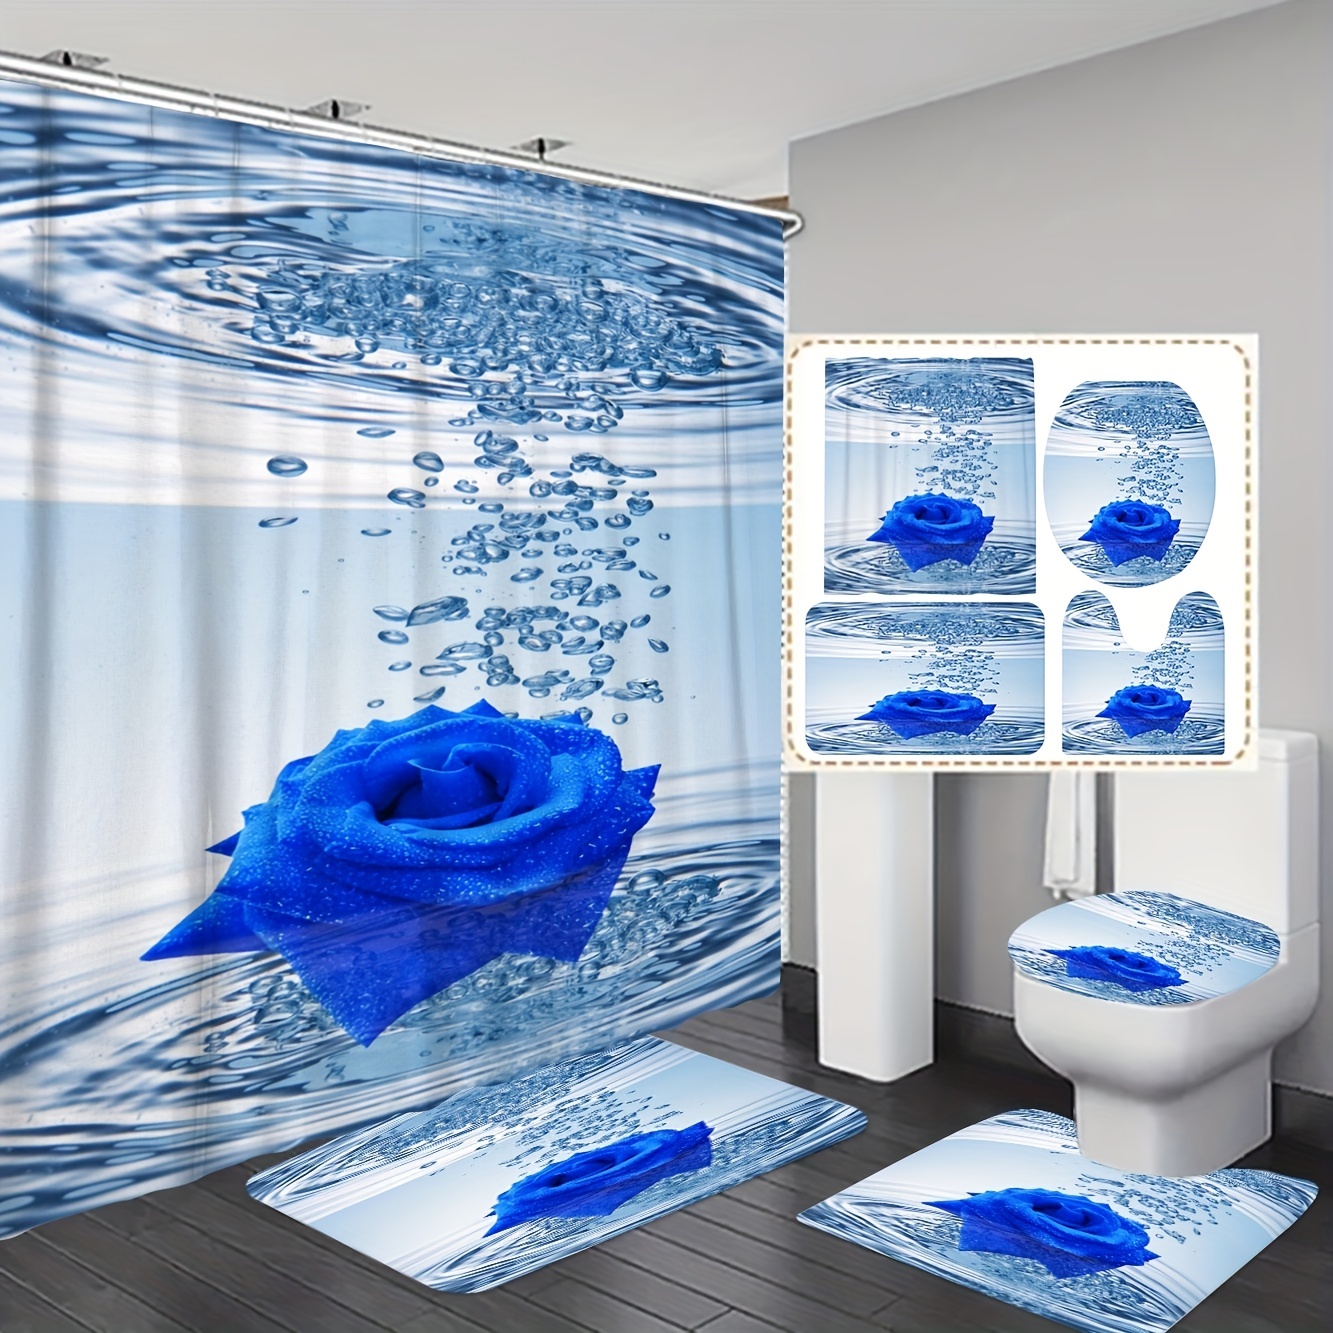 Juego de accesorios de baño azul de 4 piezas, juego de baño de cerámica  para decoración de baño, accesorios para baños, accesorios de baño azules  con